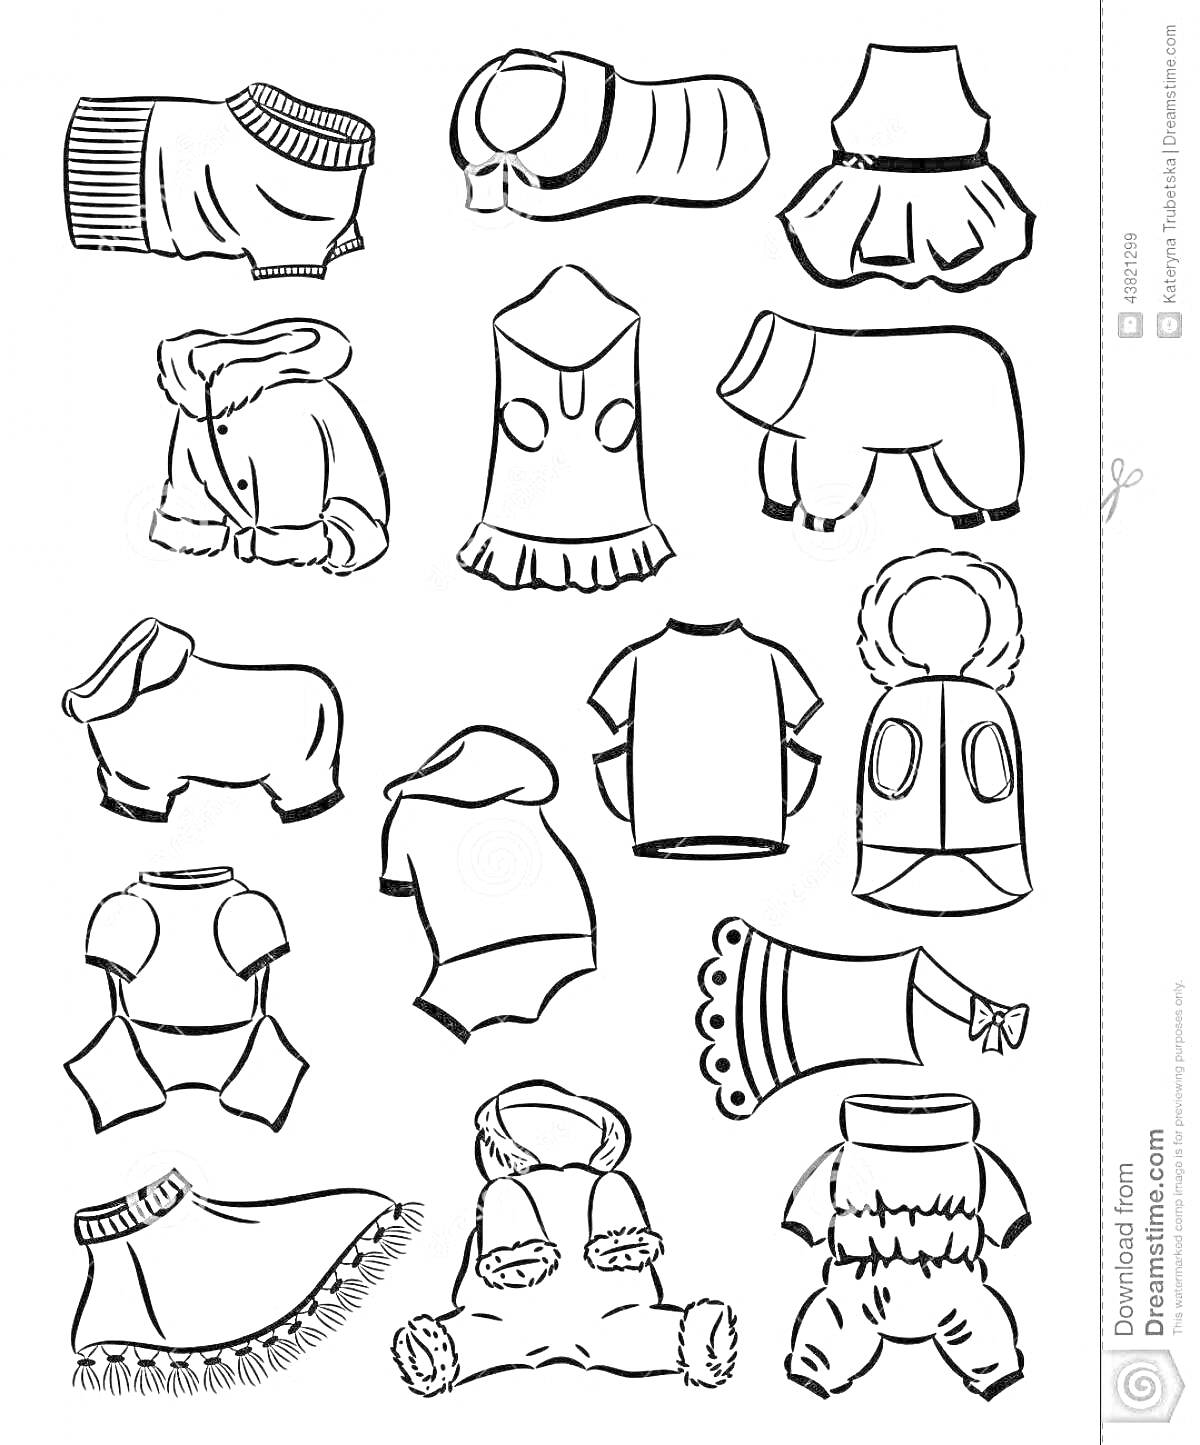 Раскраска Различные виды одежды для собак, включая свитера, жилеты, куртки, комбинезоны и платье с принтом.